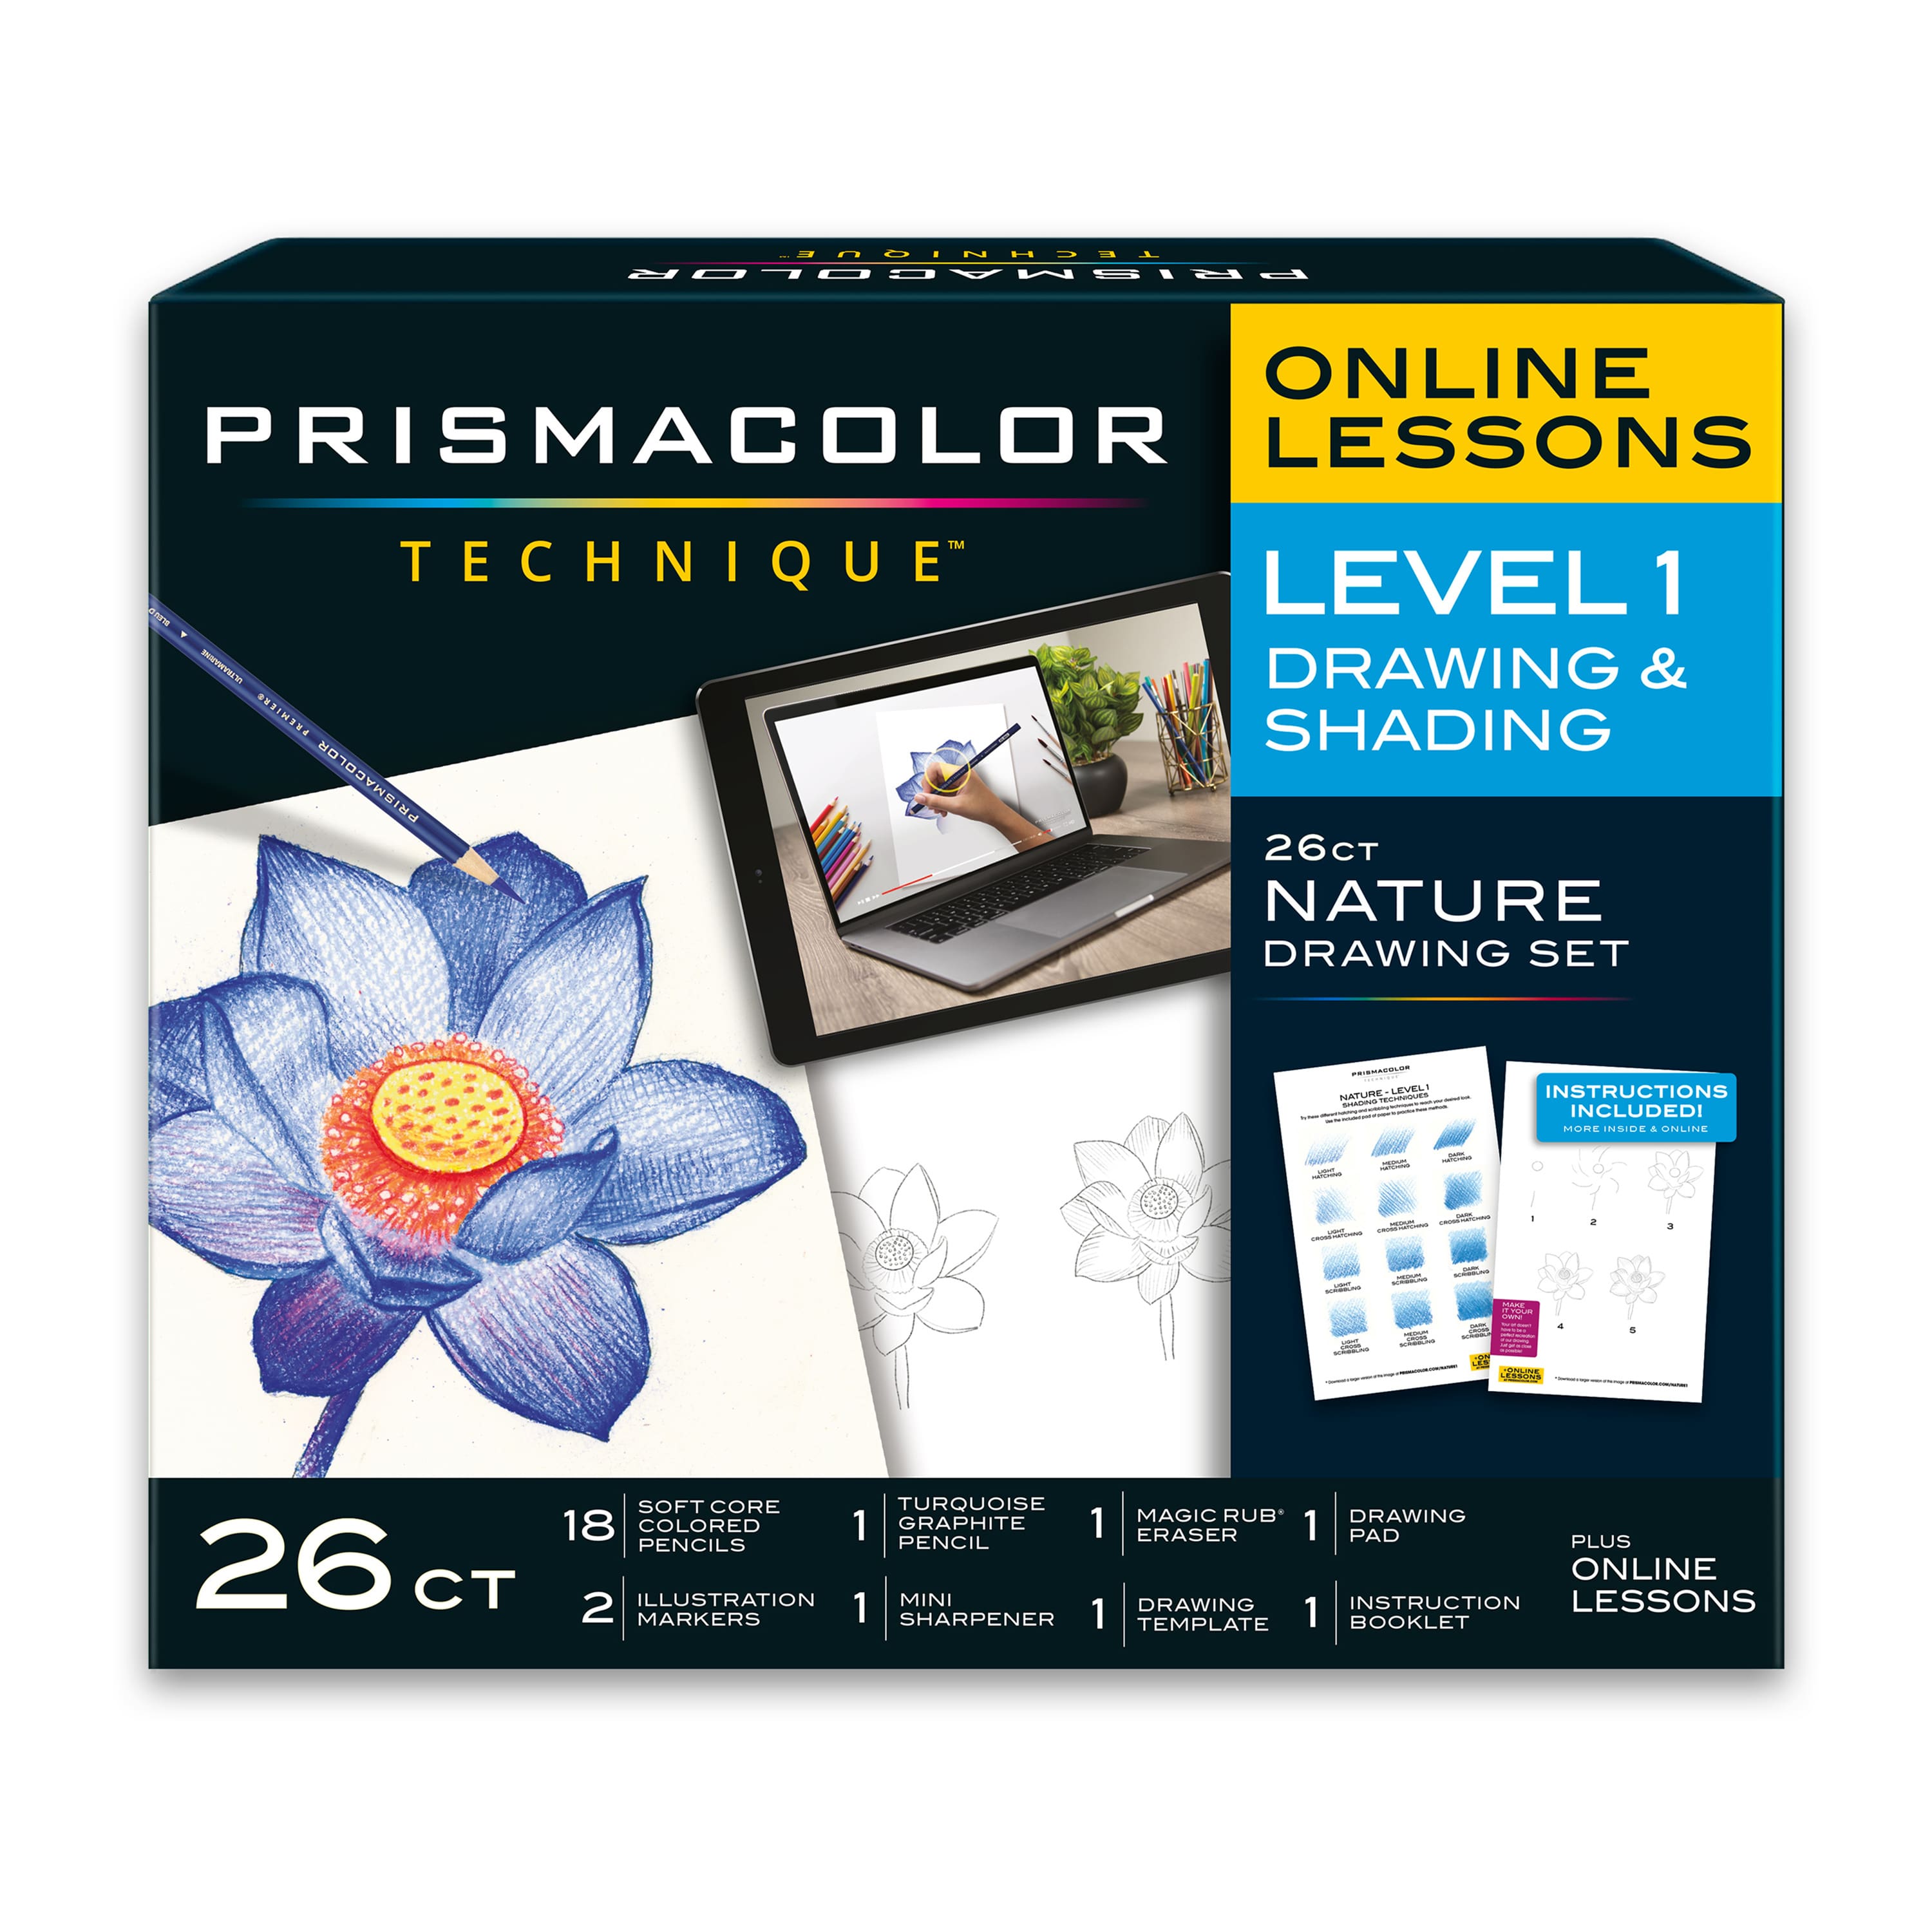 Prismacolor Technique™ 26 Piece Level 1 Nature Drawing Set